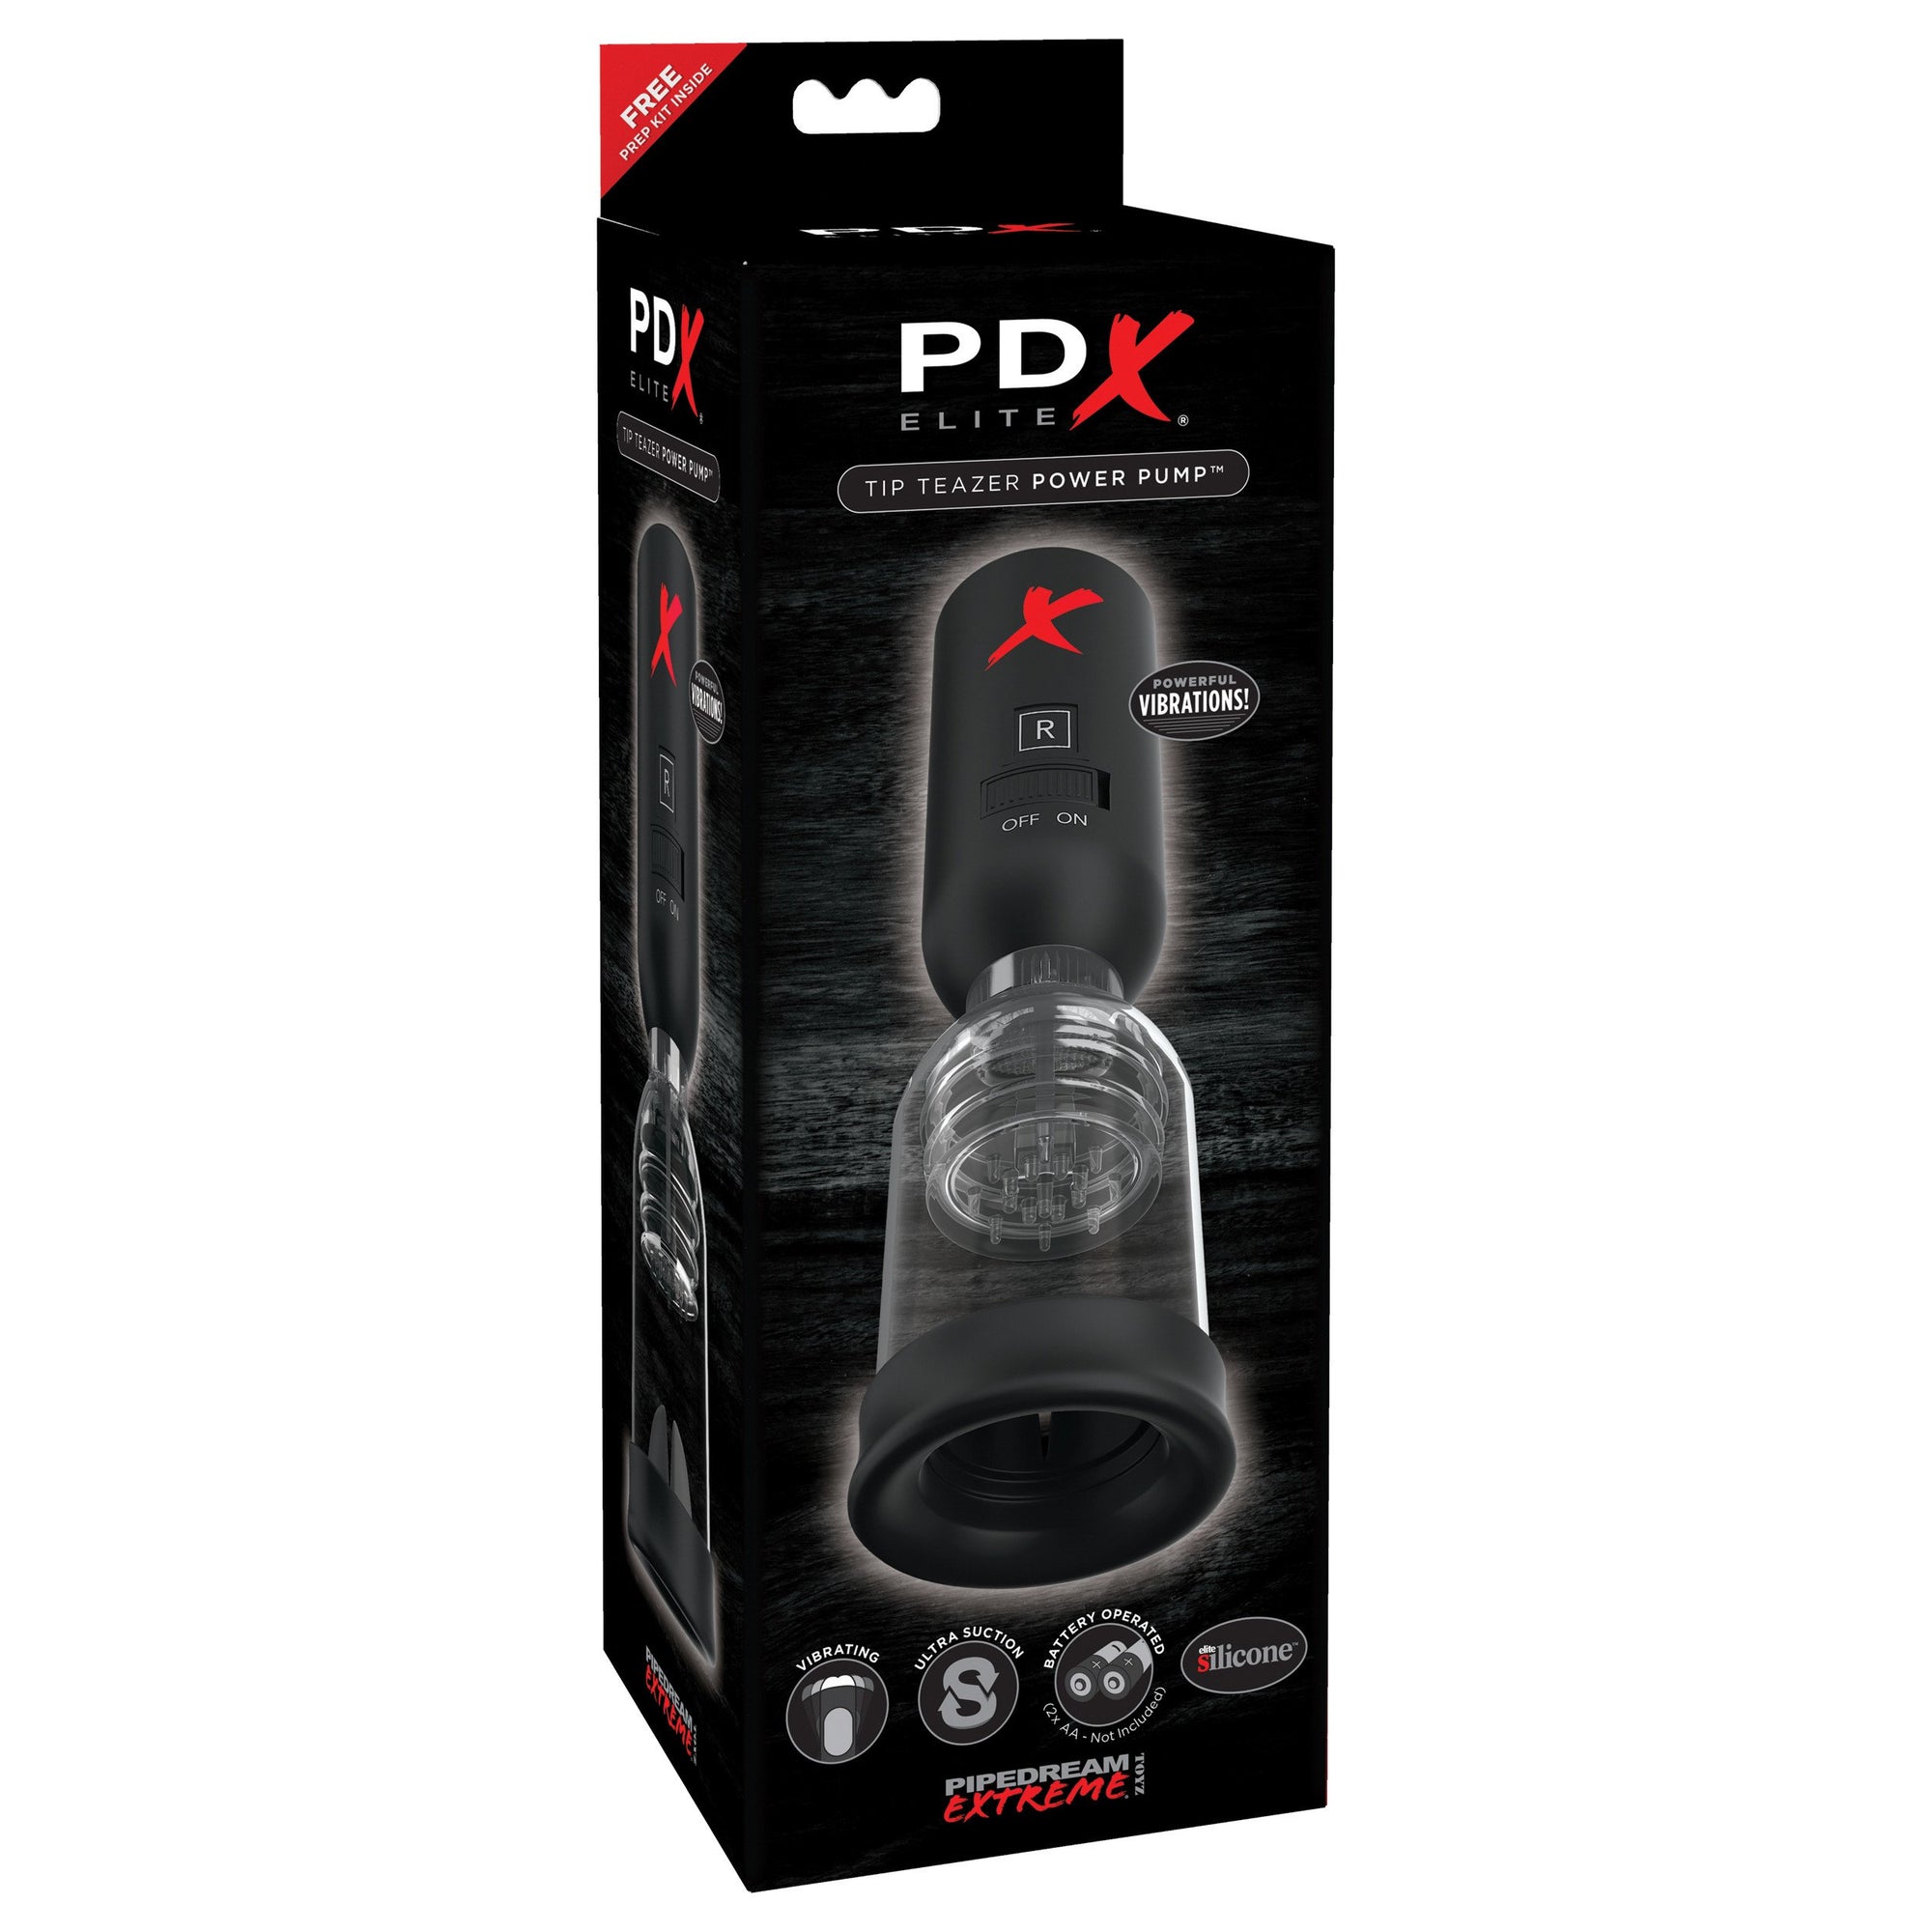 Pipedream - PDX Elite Tip Teazer Power Pump